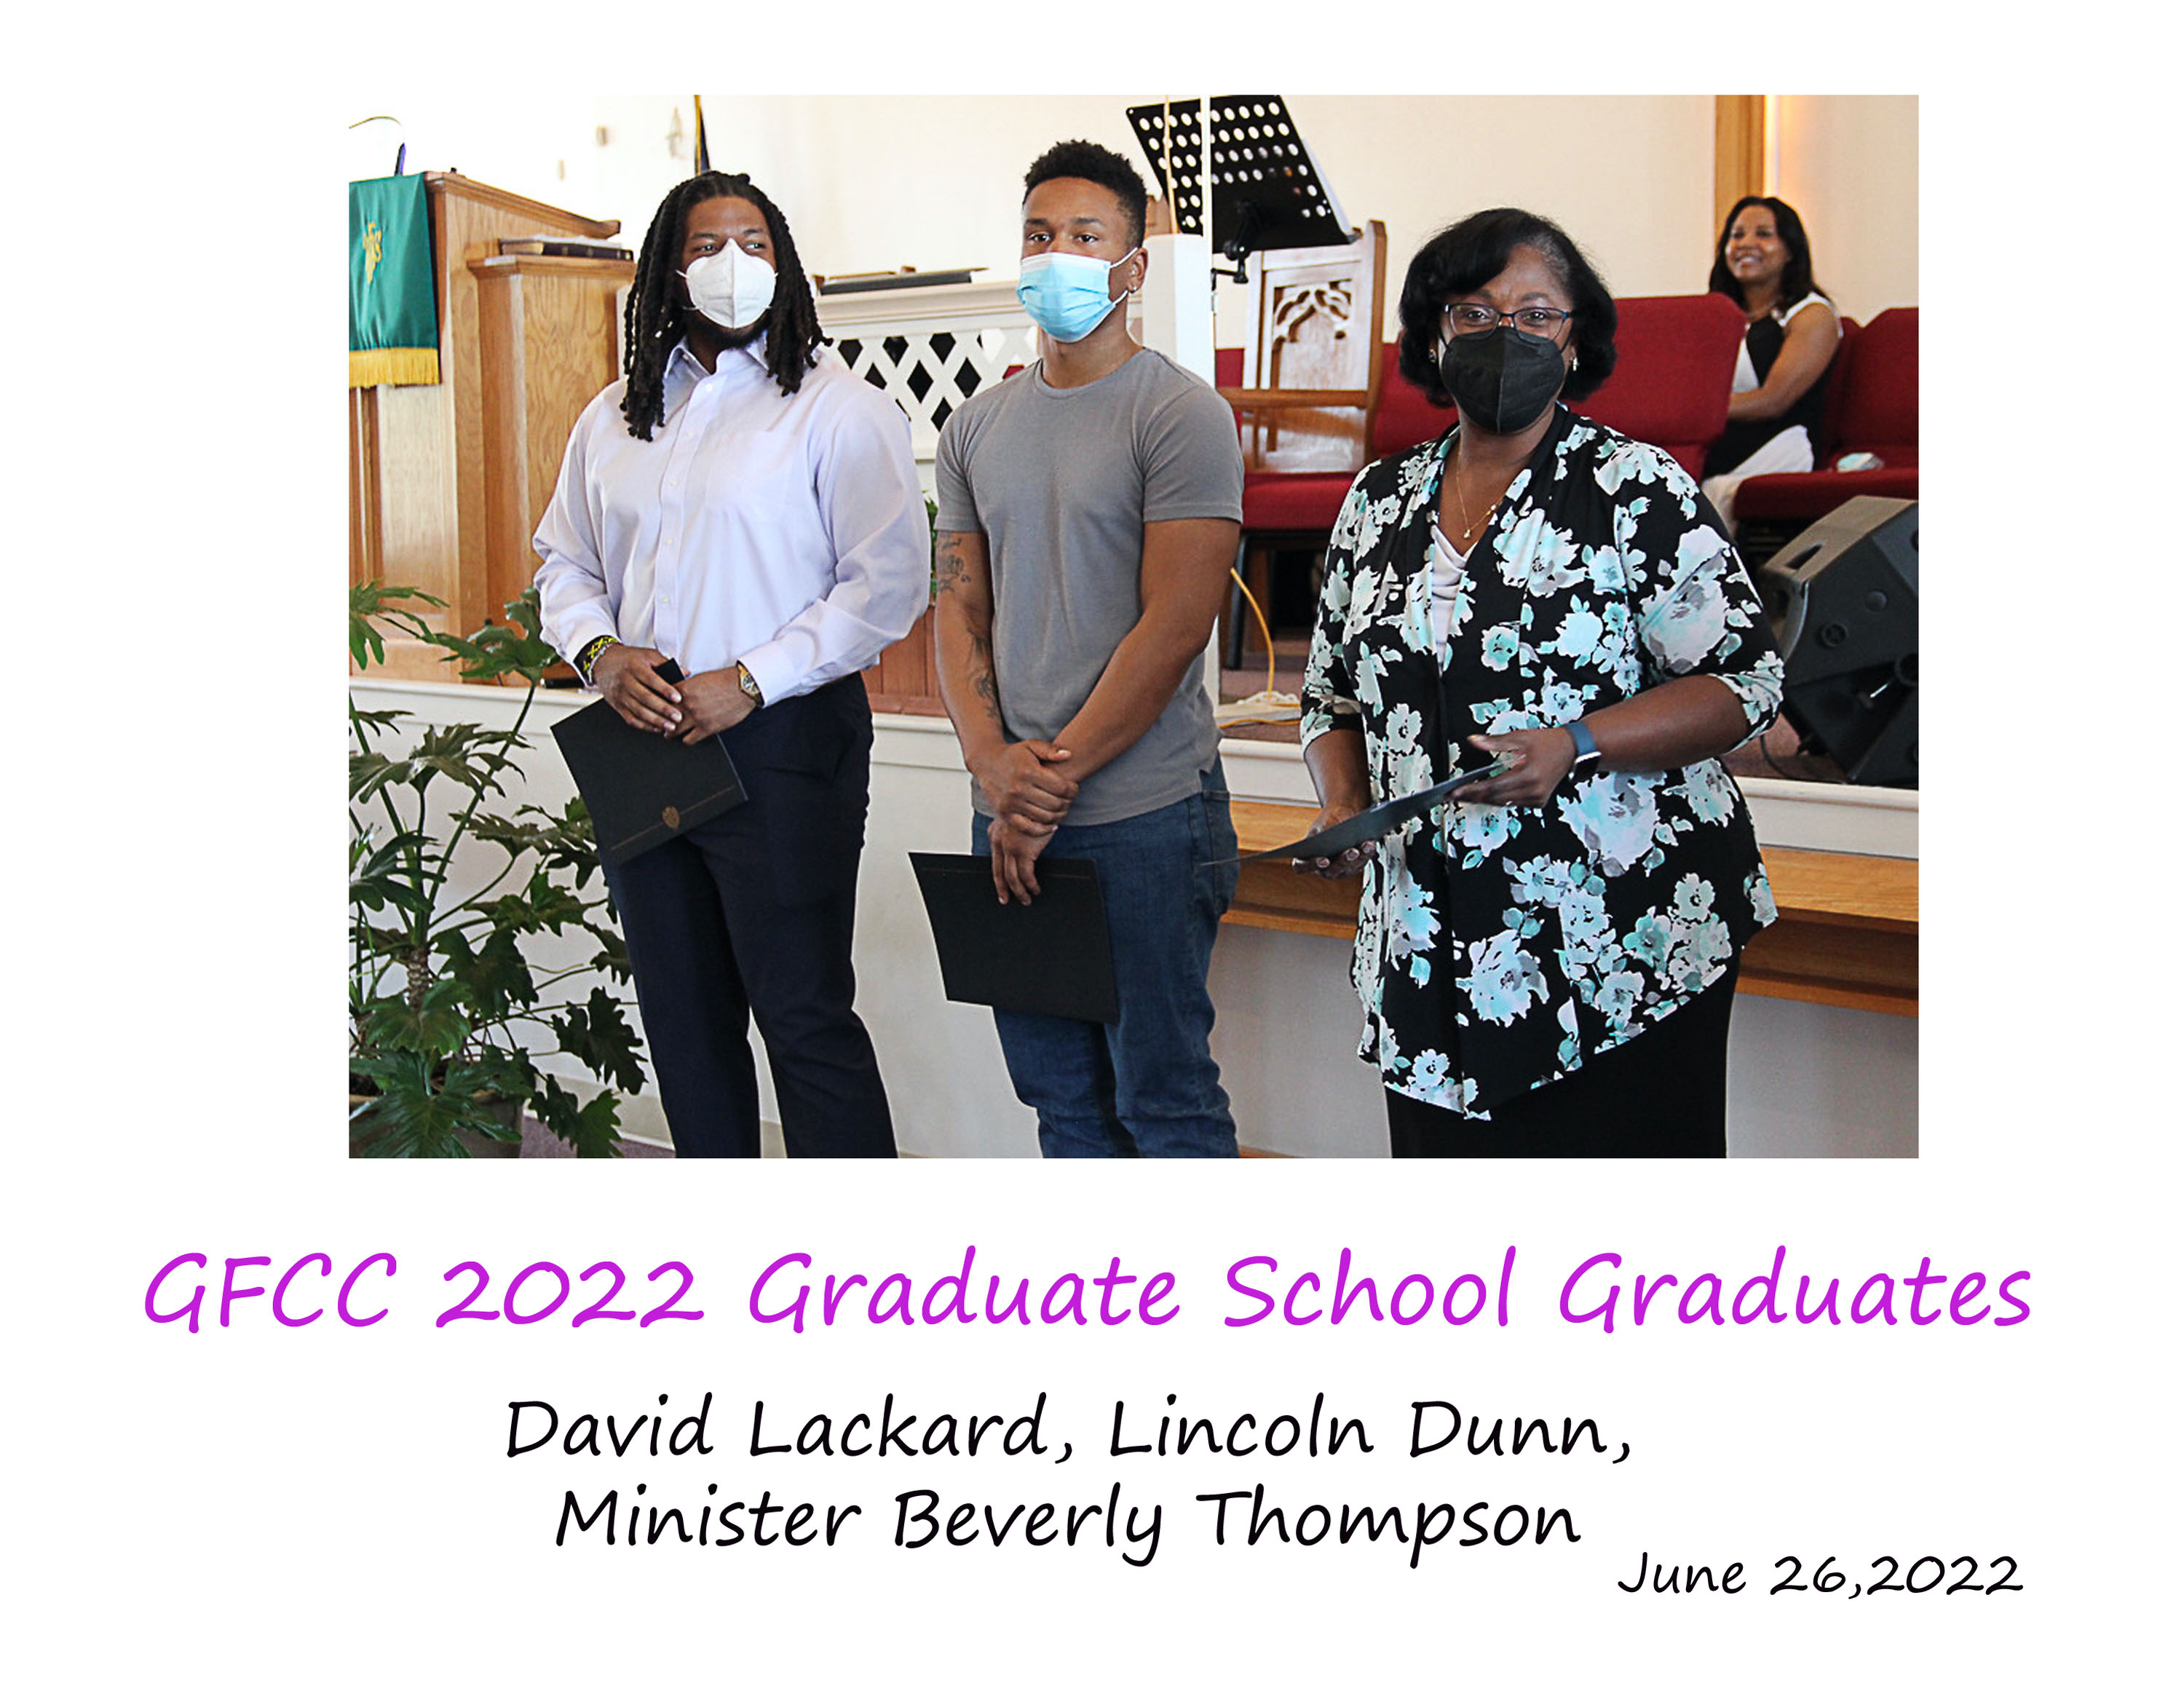 GFCC's grad school graduates